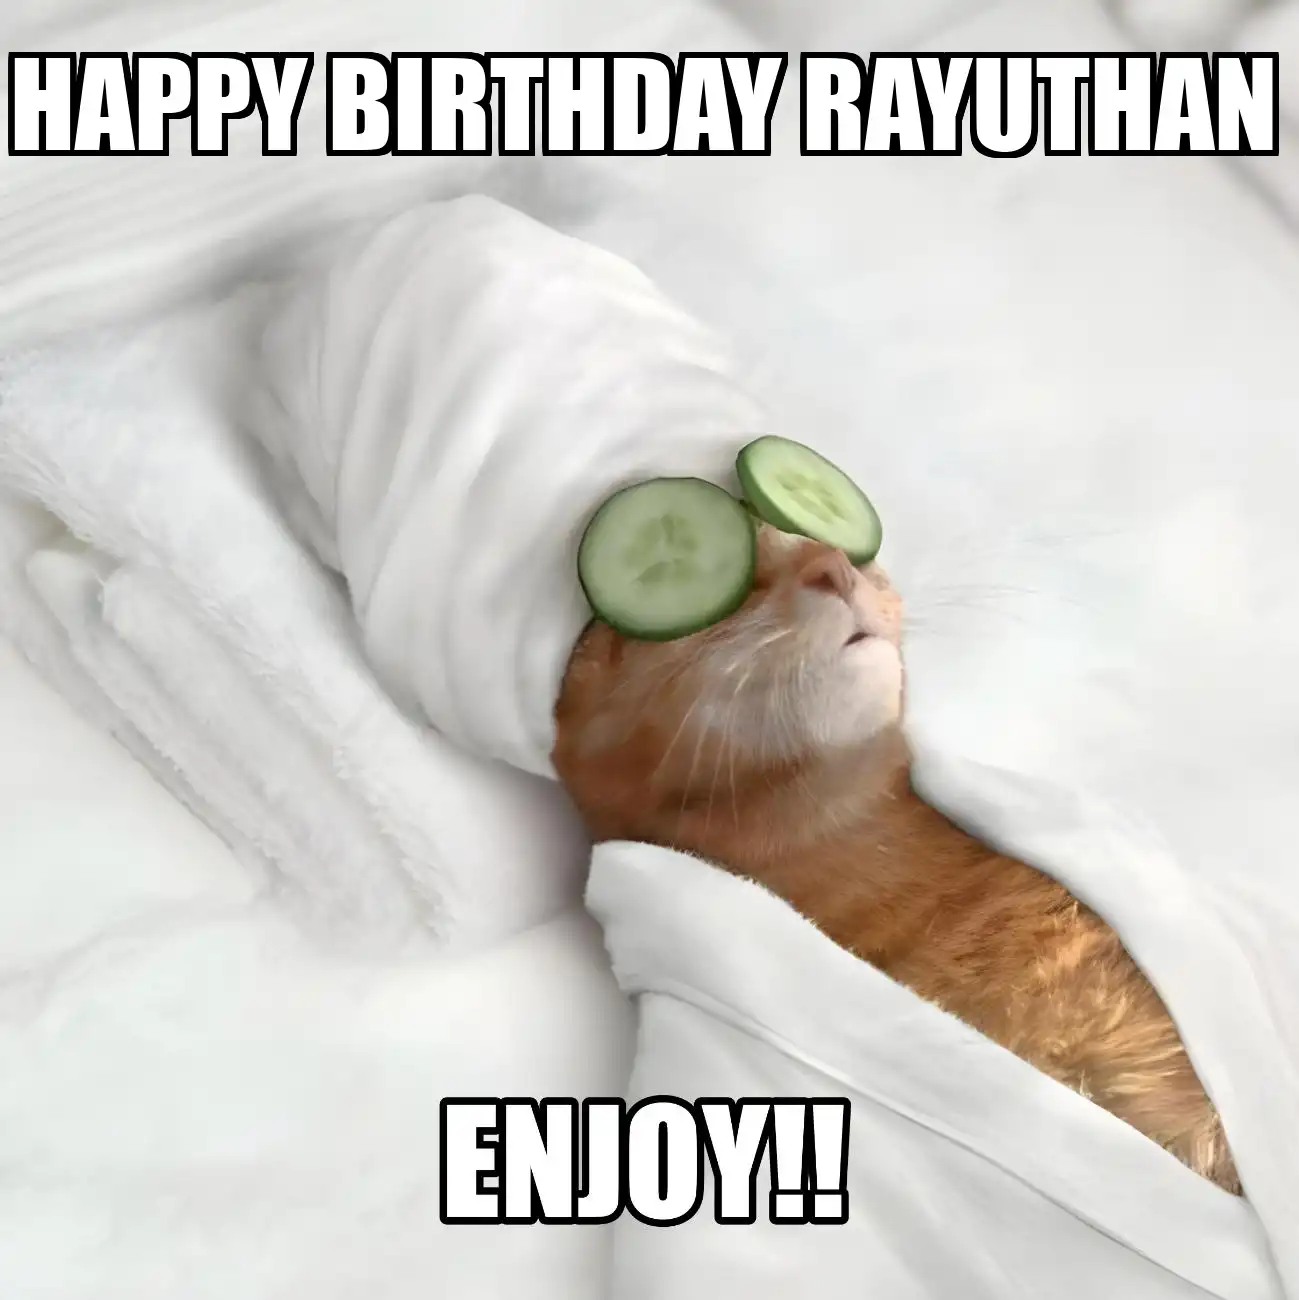 Happy Birthday Rayuthan Enjoy Cat Meme